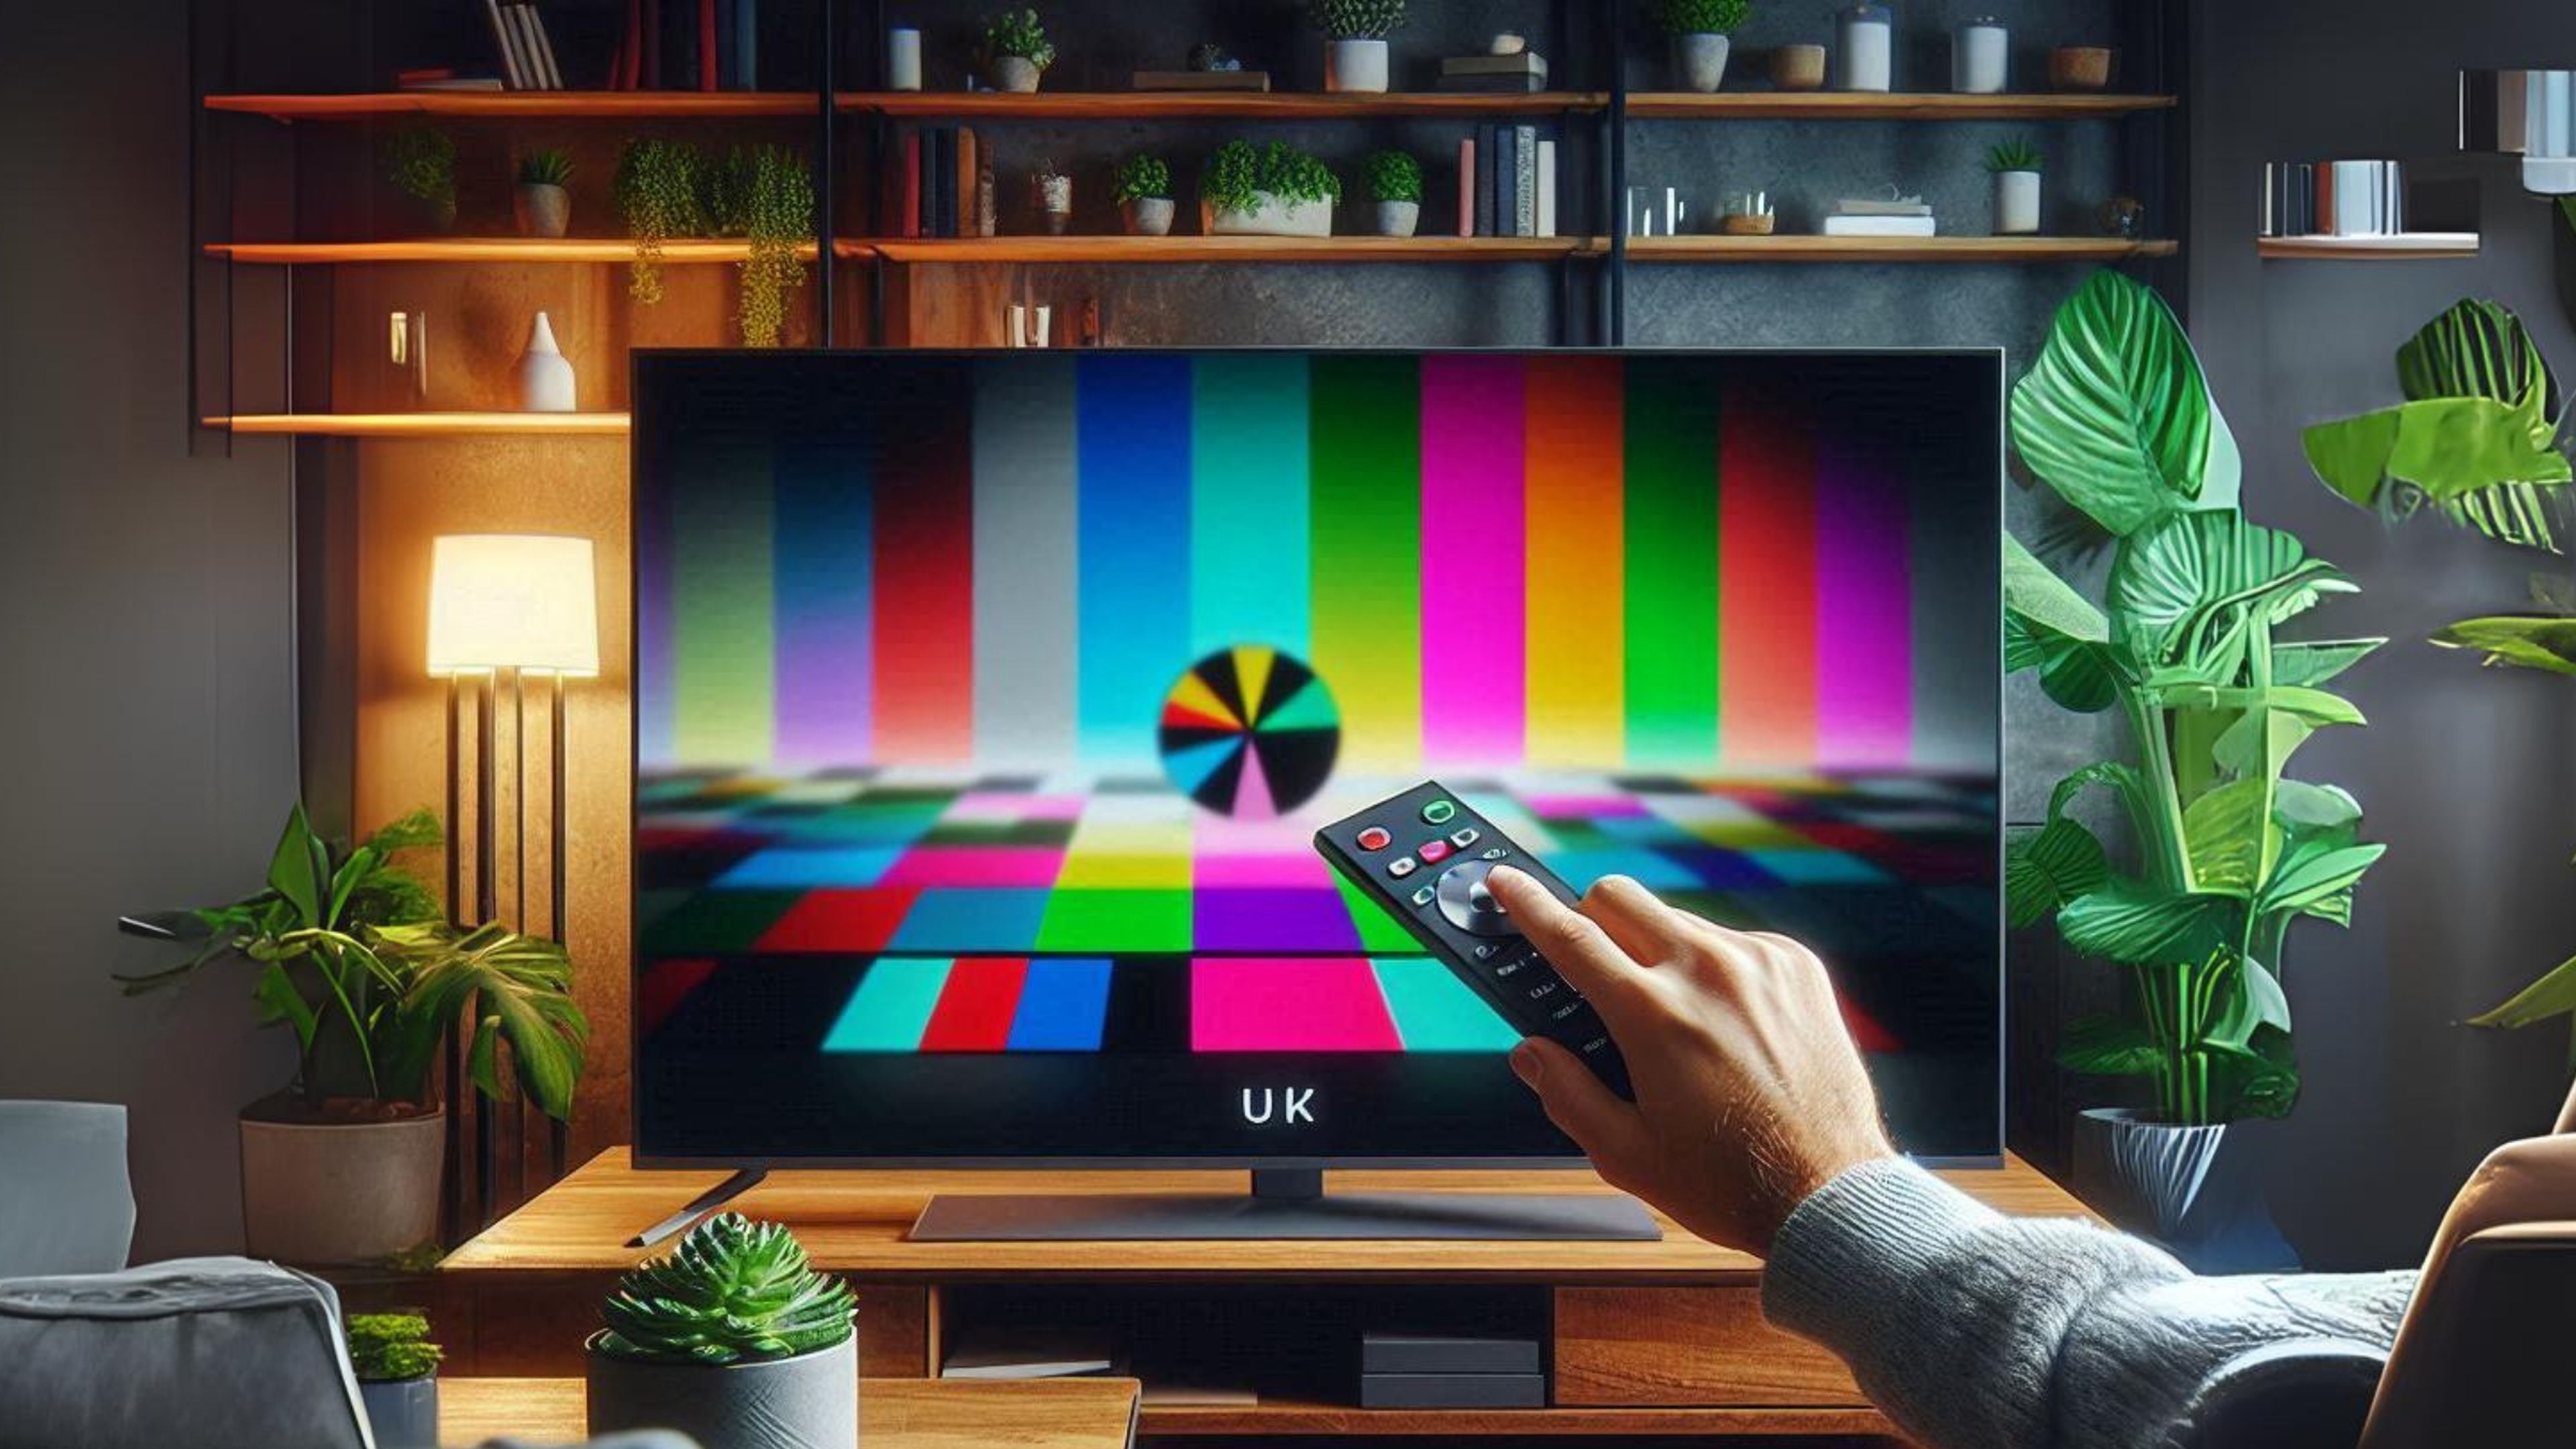 5 ajustes rápidos para mejorar la calidad de imagen de tu Smart TV